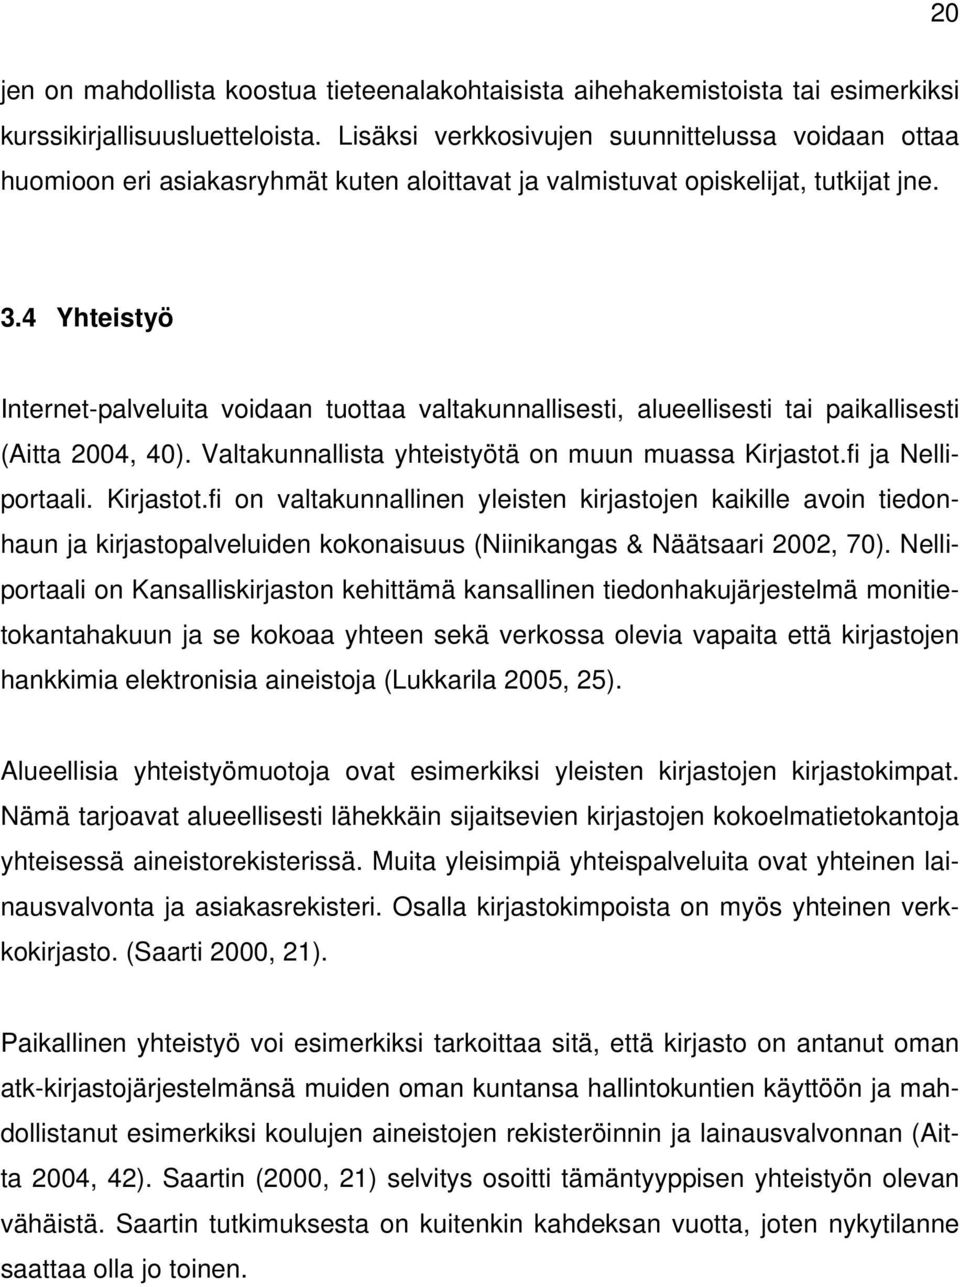 4 Yhteistyö Internet-palveluita voidaan tuottaa valtakunnallisesti, alueellisesti tai paikallisesti (Aitta 2004, 40). Valtakunnallista yhteistyötä on muun muassa Kirjastot.fi ja Nelliportaali.